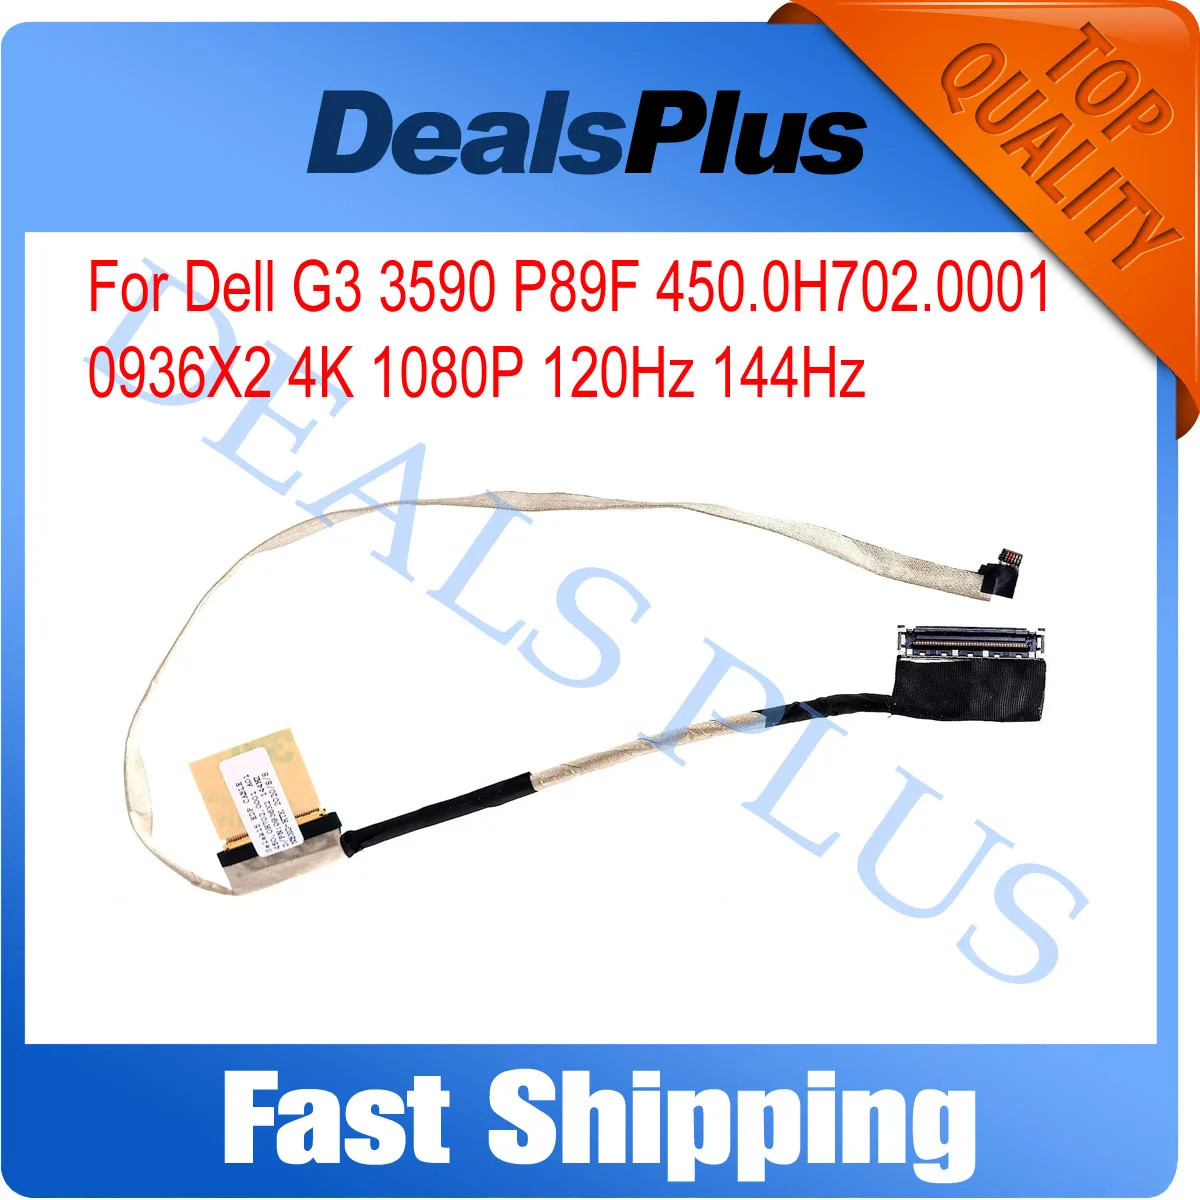 

Новый 40-контактный ЖК-кабель Lvds eDP 4K 1080P 120 Гц 144 Гц, замена кабеля для Dell G3 3590 P89F 450.0H702.0001 0936X2 936X2